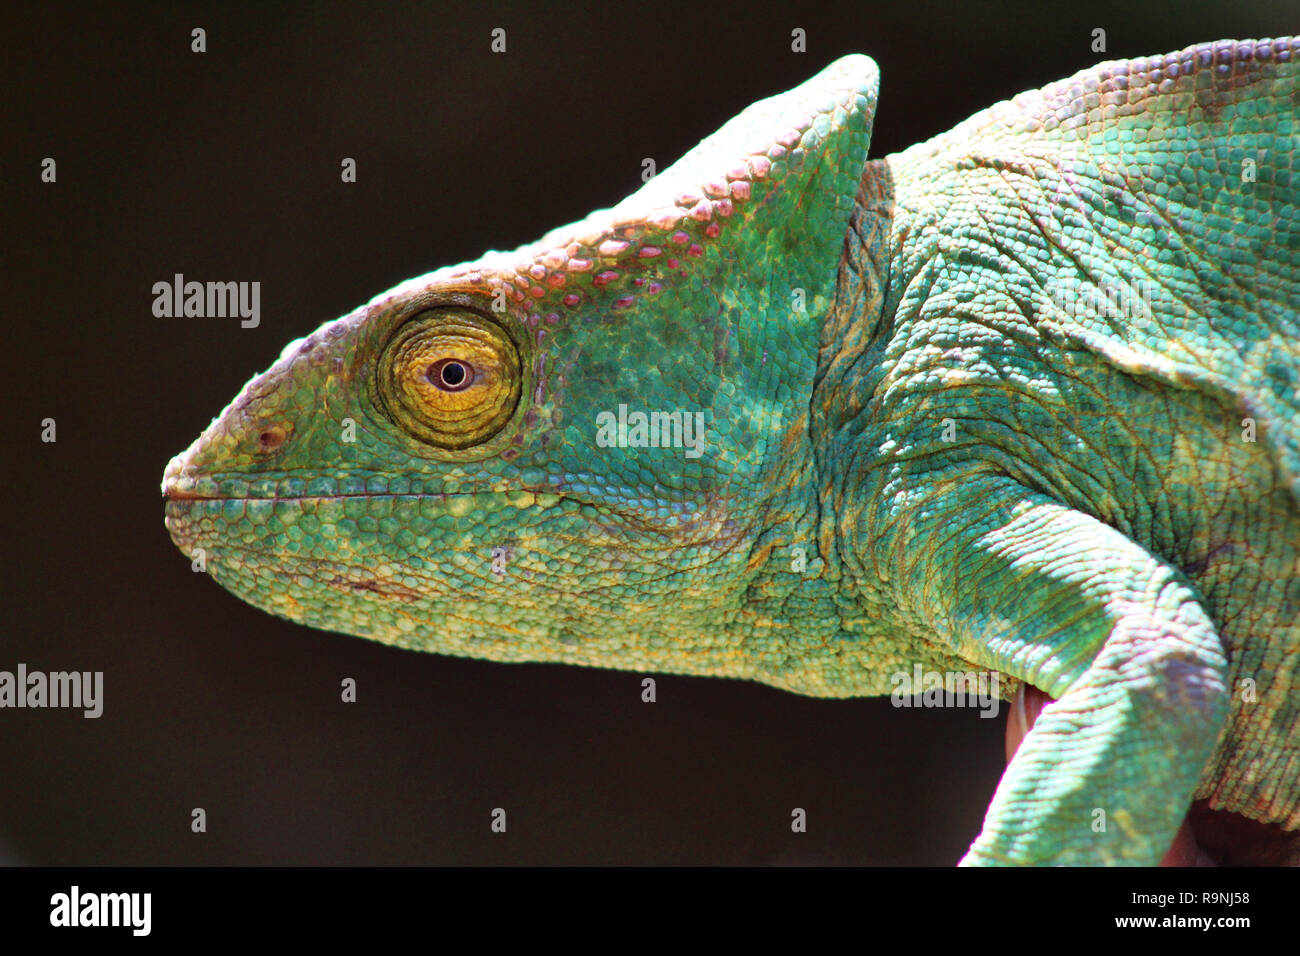 Stunning sideways portrait og Parson's chameleon, Andasibe, Madagascar Stock Photo